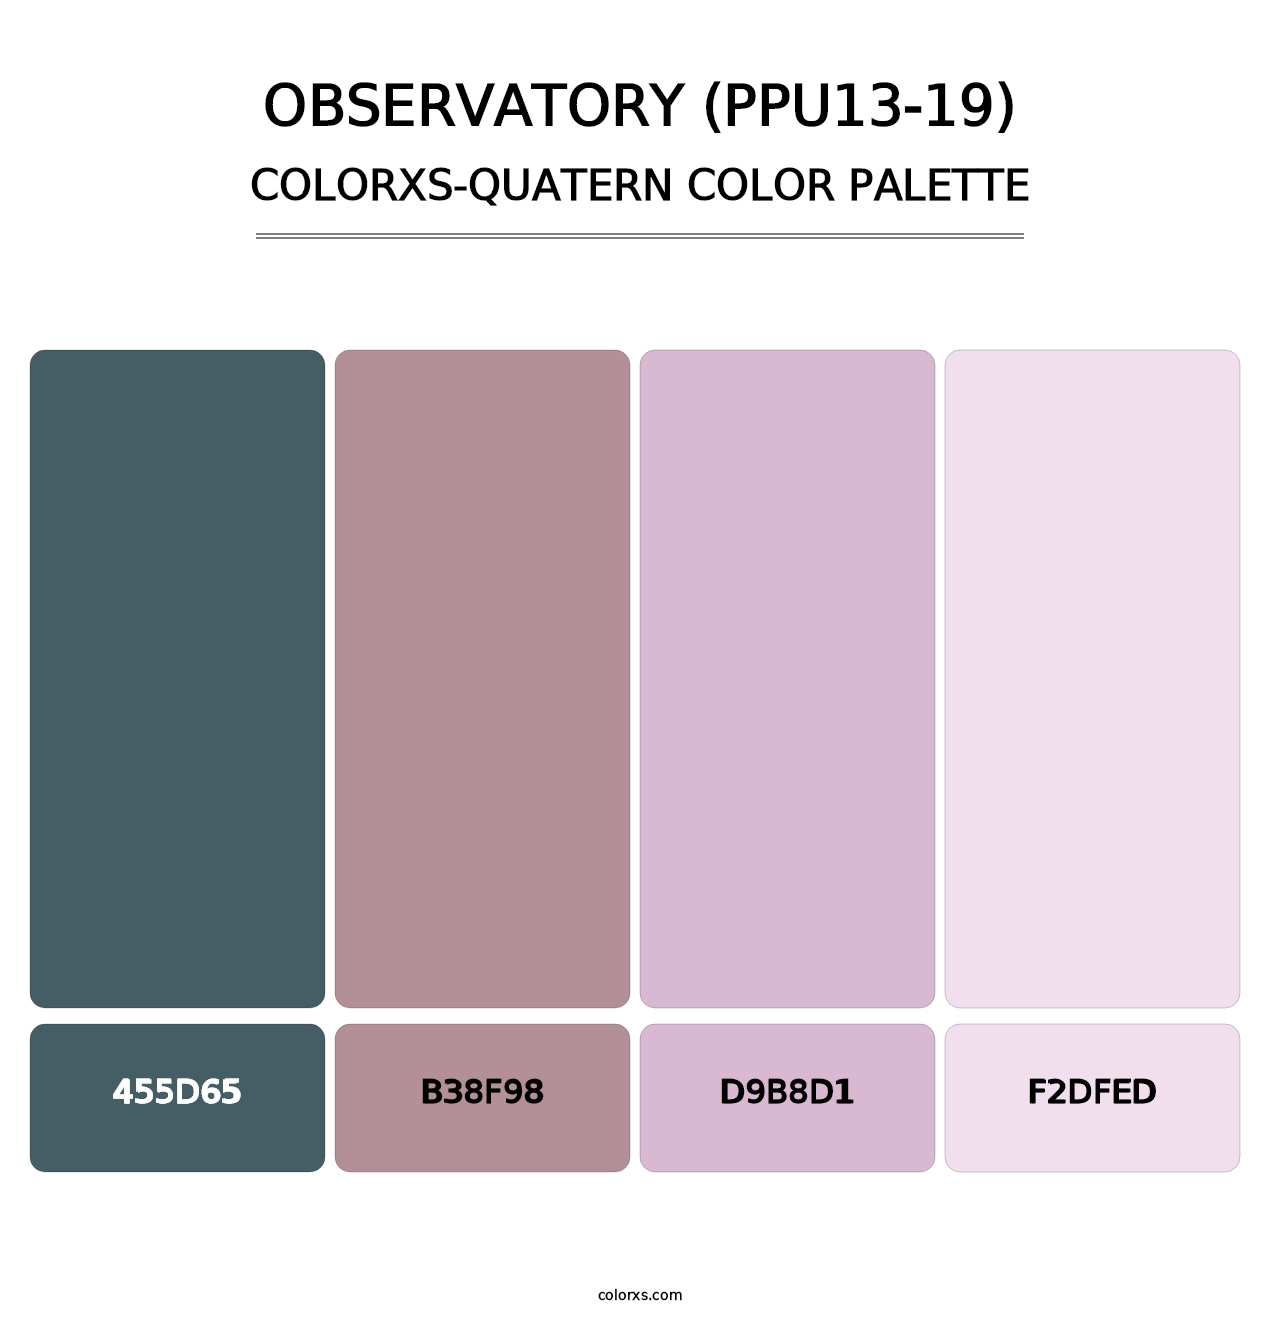 Observatory (PPU13-19) - Colorxs Quatern Palette